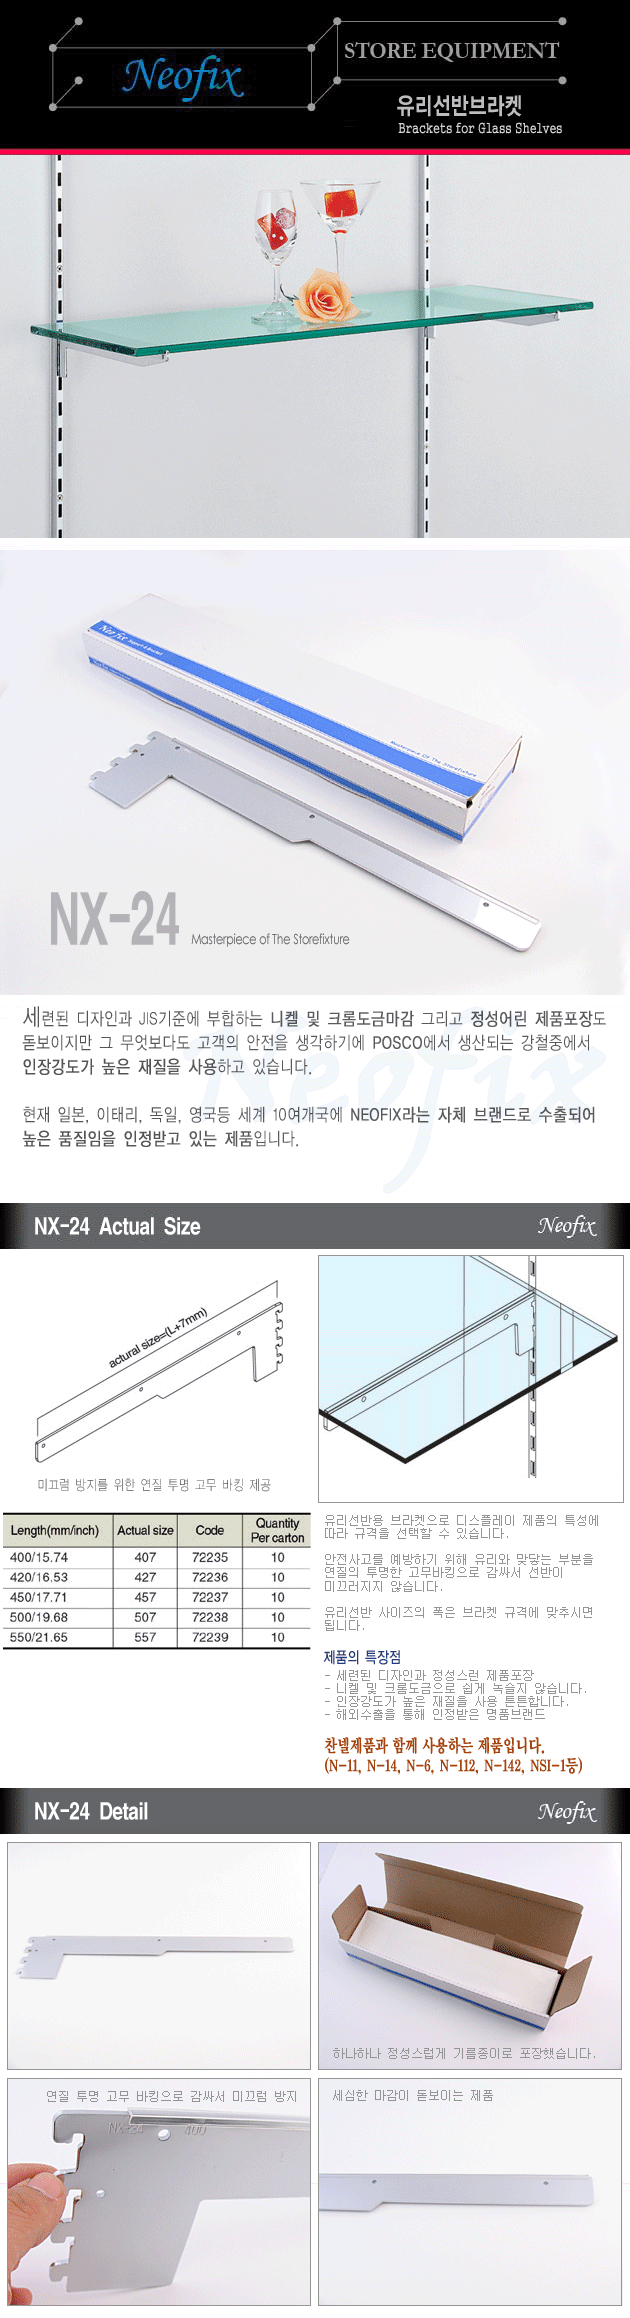 NX-24